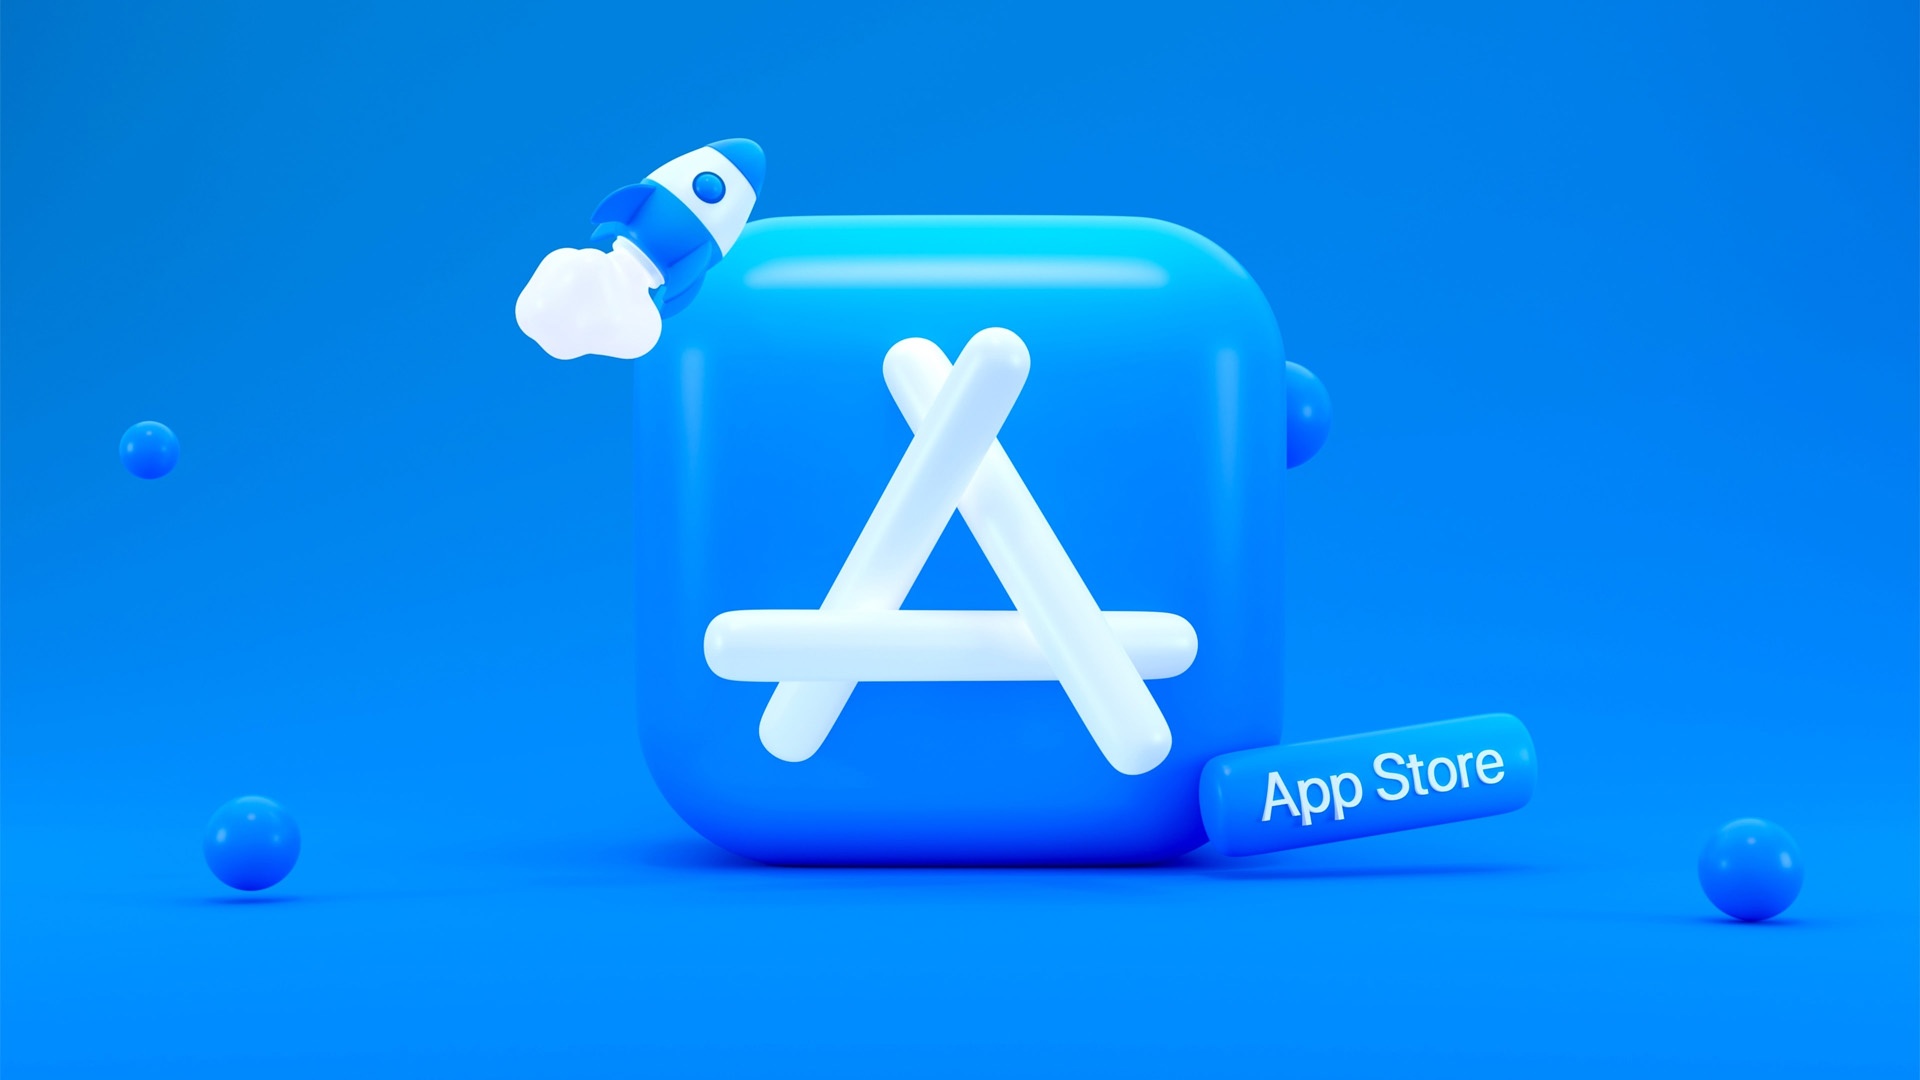 #Apple könnte einen bislang nicht für möglich gehaltenen Schritt gehen – kommen bald alternative App Stores?